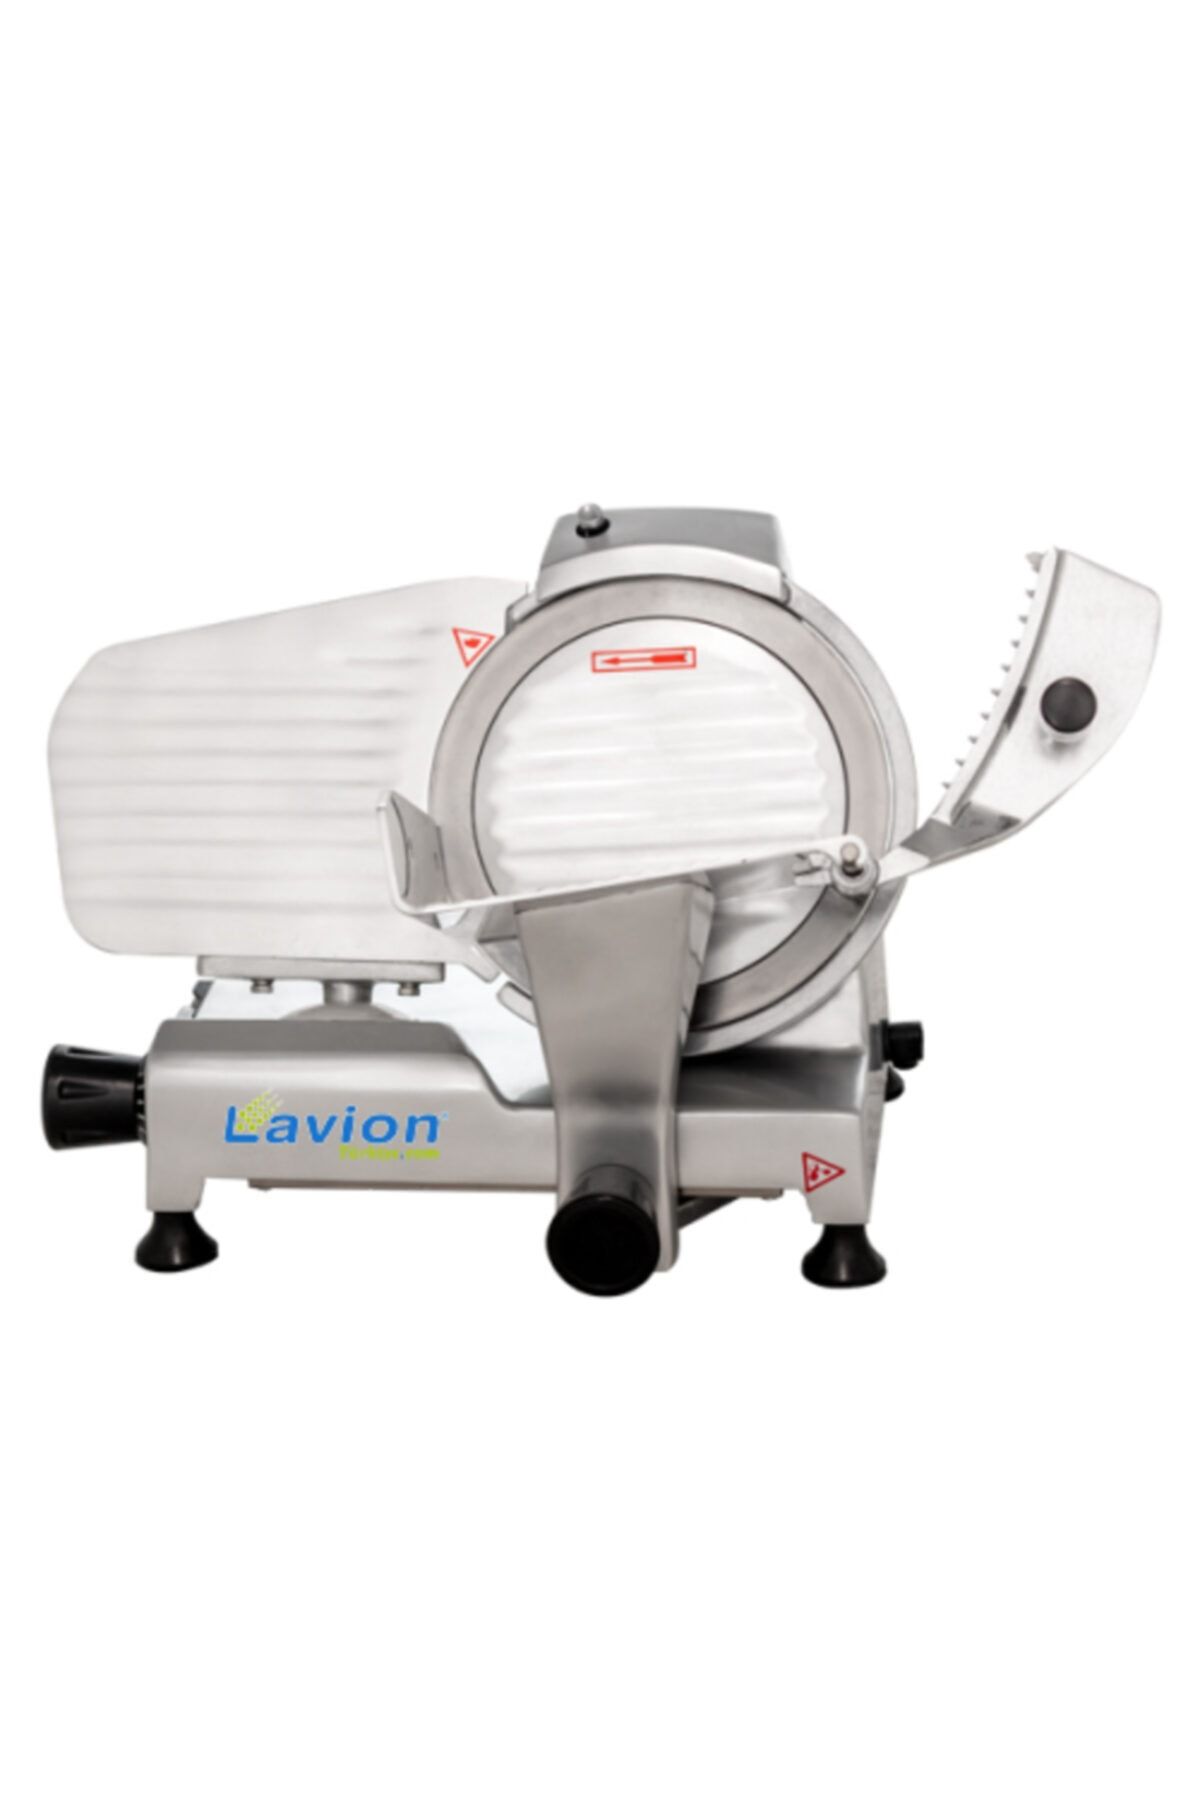 LavionDemsan Lavion Hbs 22 Cm Salam Kaşar Dilimleme Makinası - Dilimleme Makineleri 2 Yıl Garantili